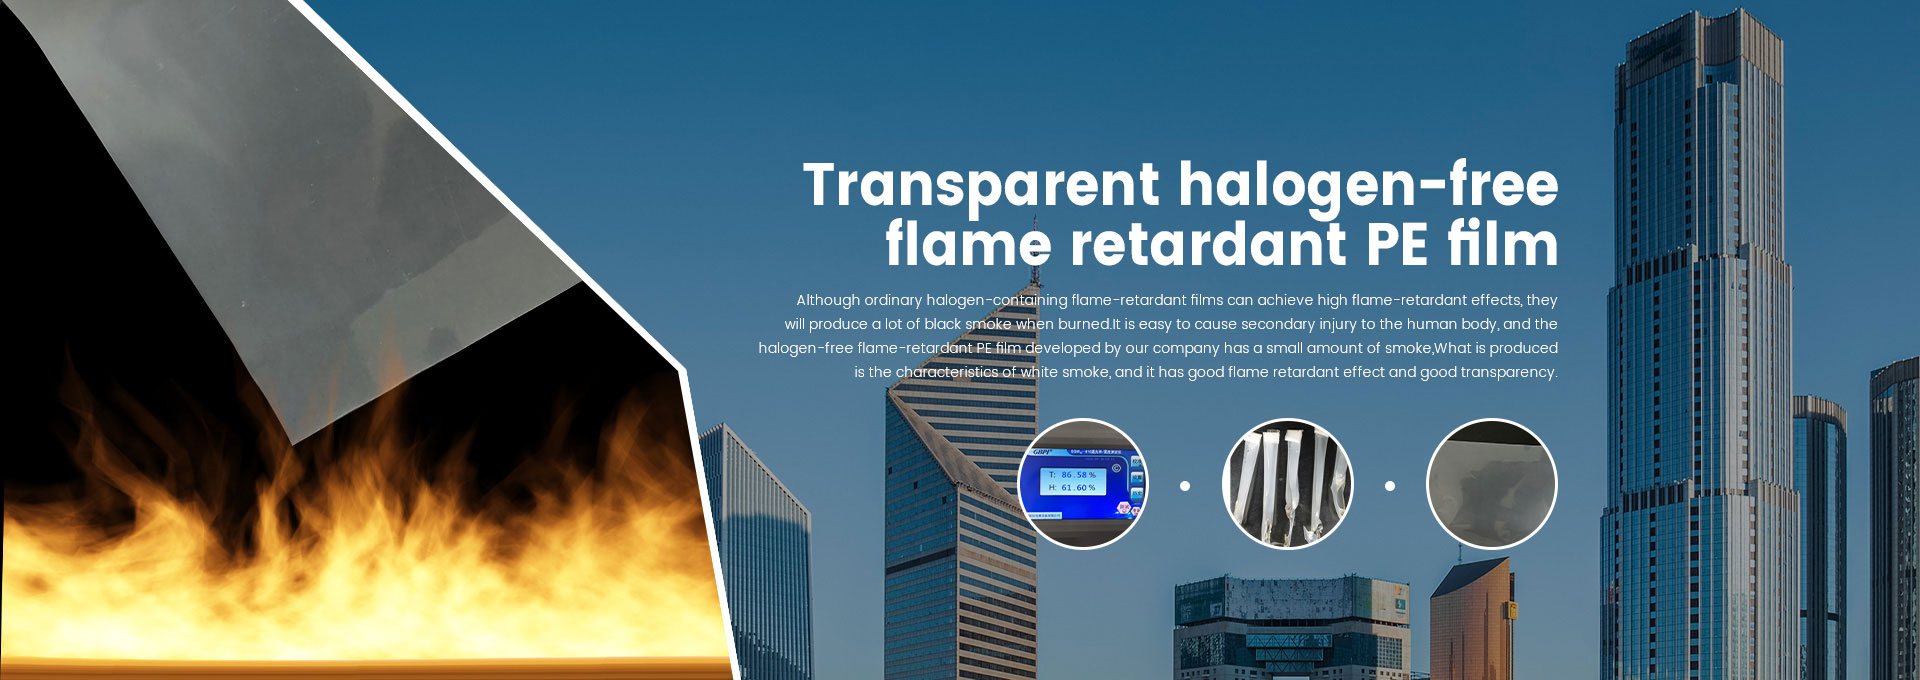 Transparent halogen-free flame retardant PE film